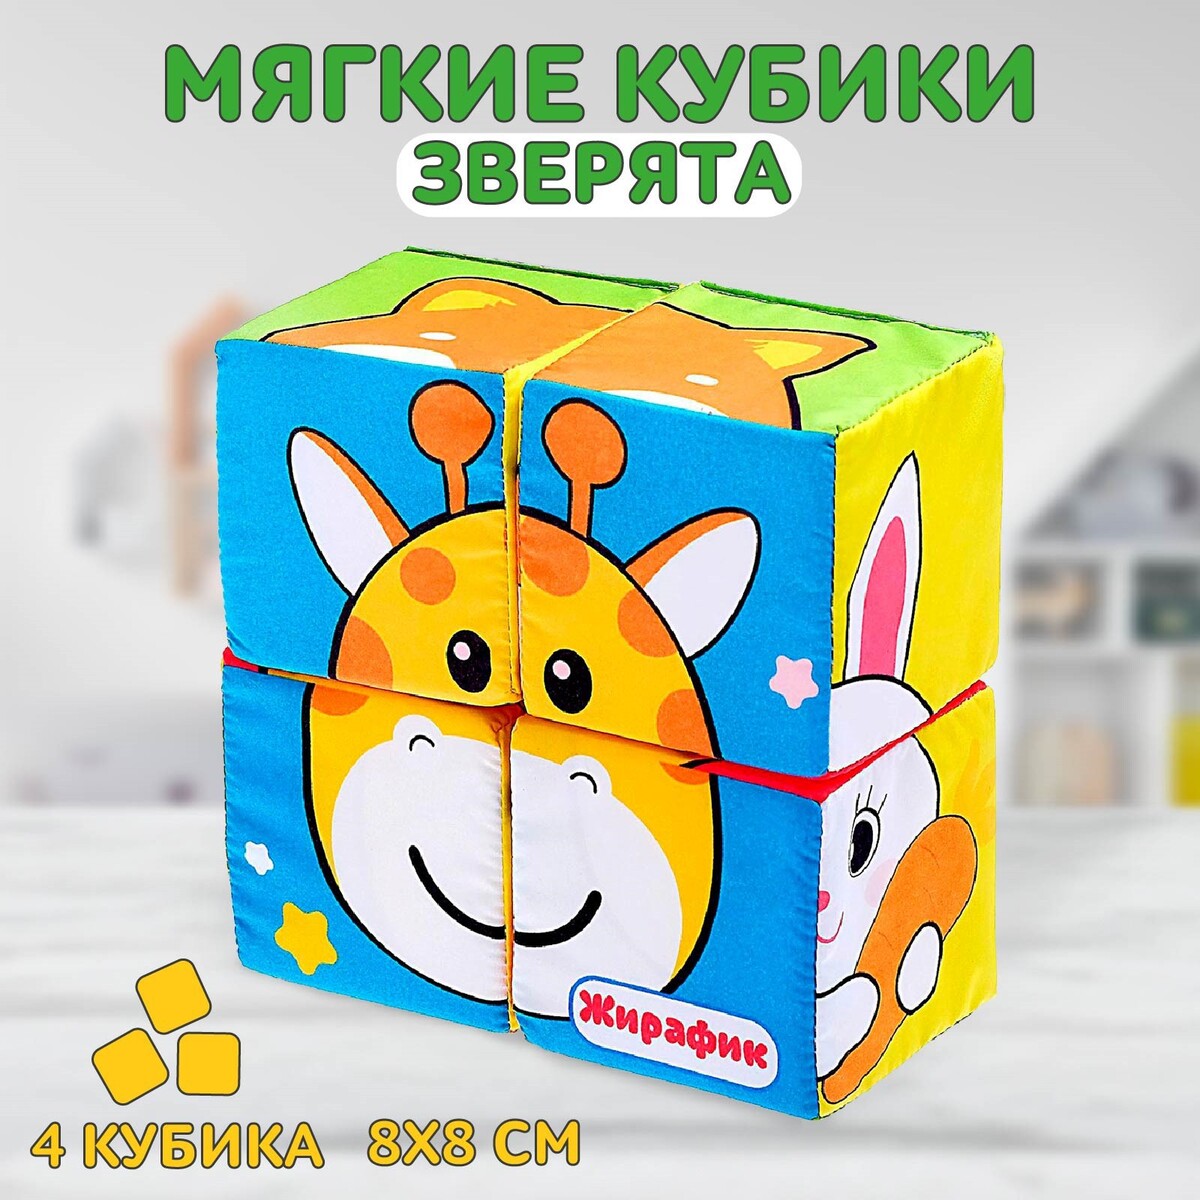 Мягкие кубики кубики мягкие b toys battat 68602 1